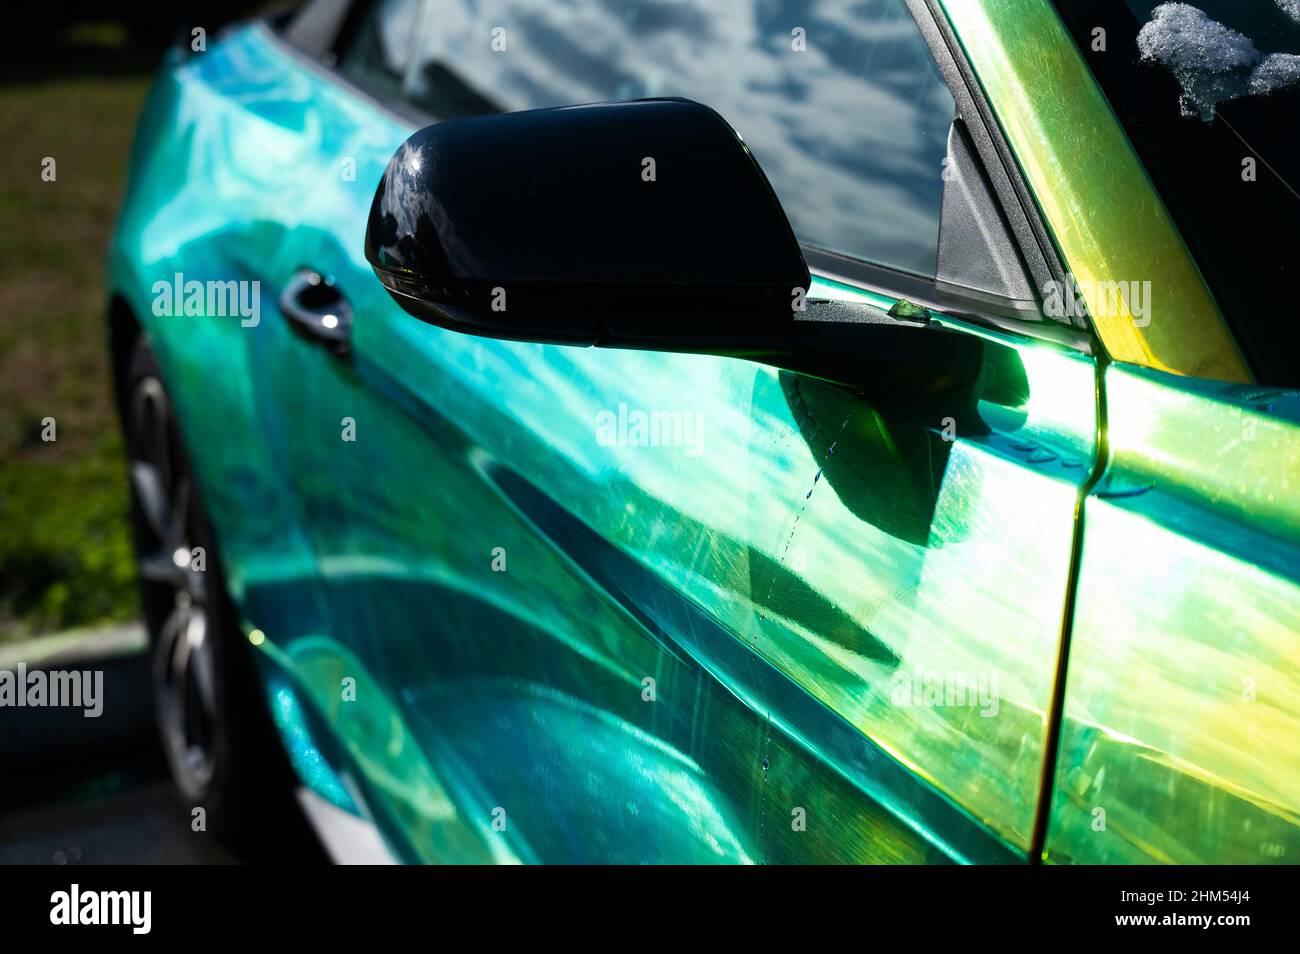 El coche está pintado con una pintura de camaleón de color amarillo verdoso  Fotografía de stock - Alamy